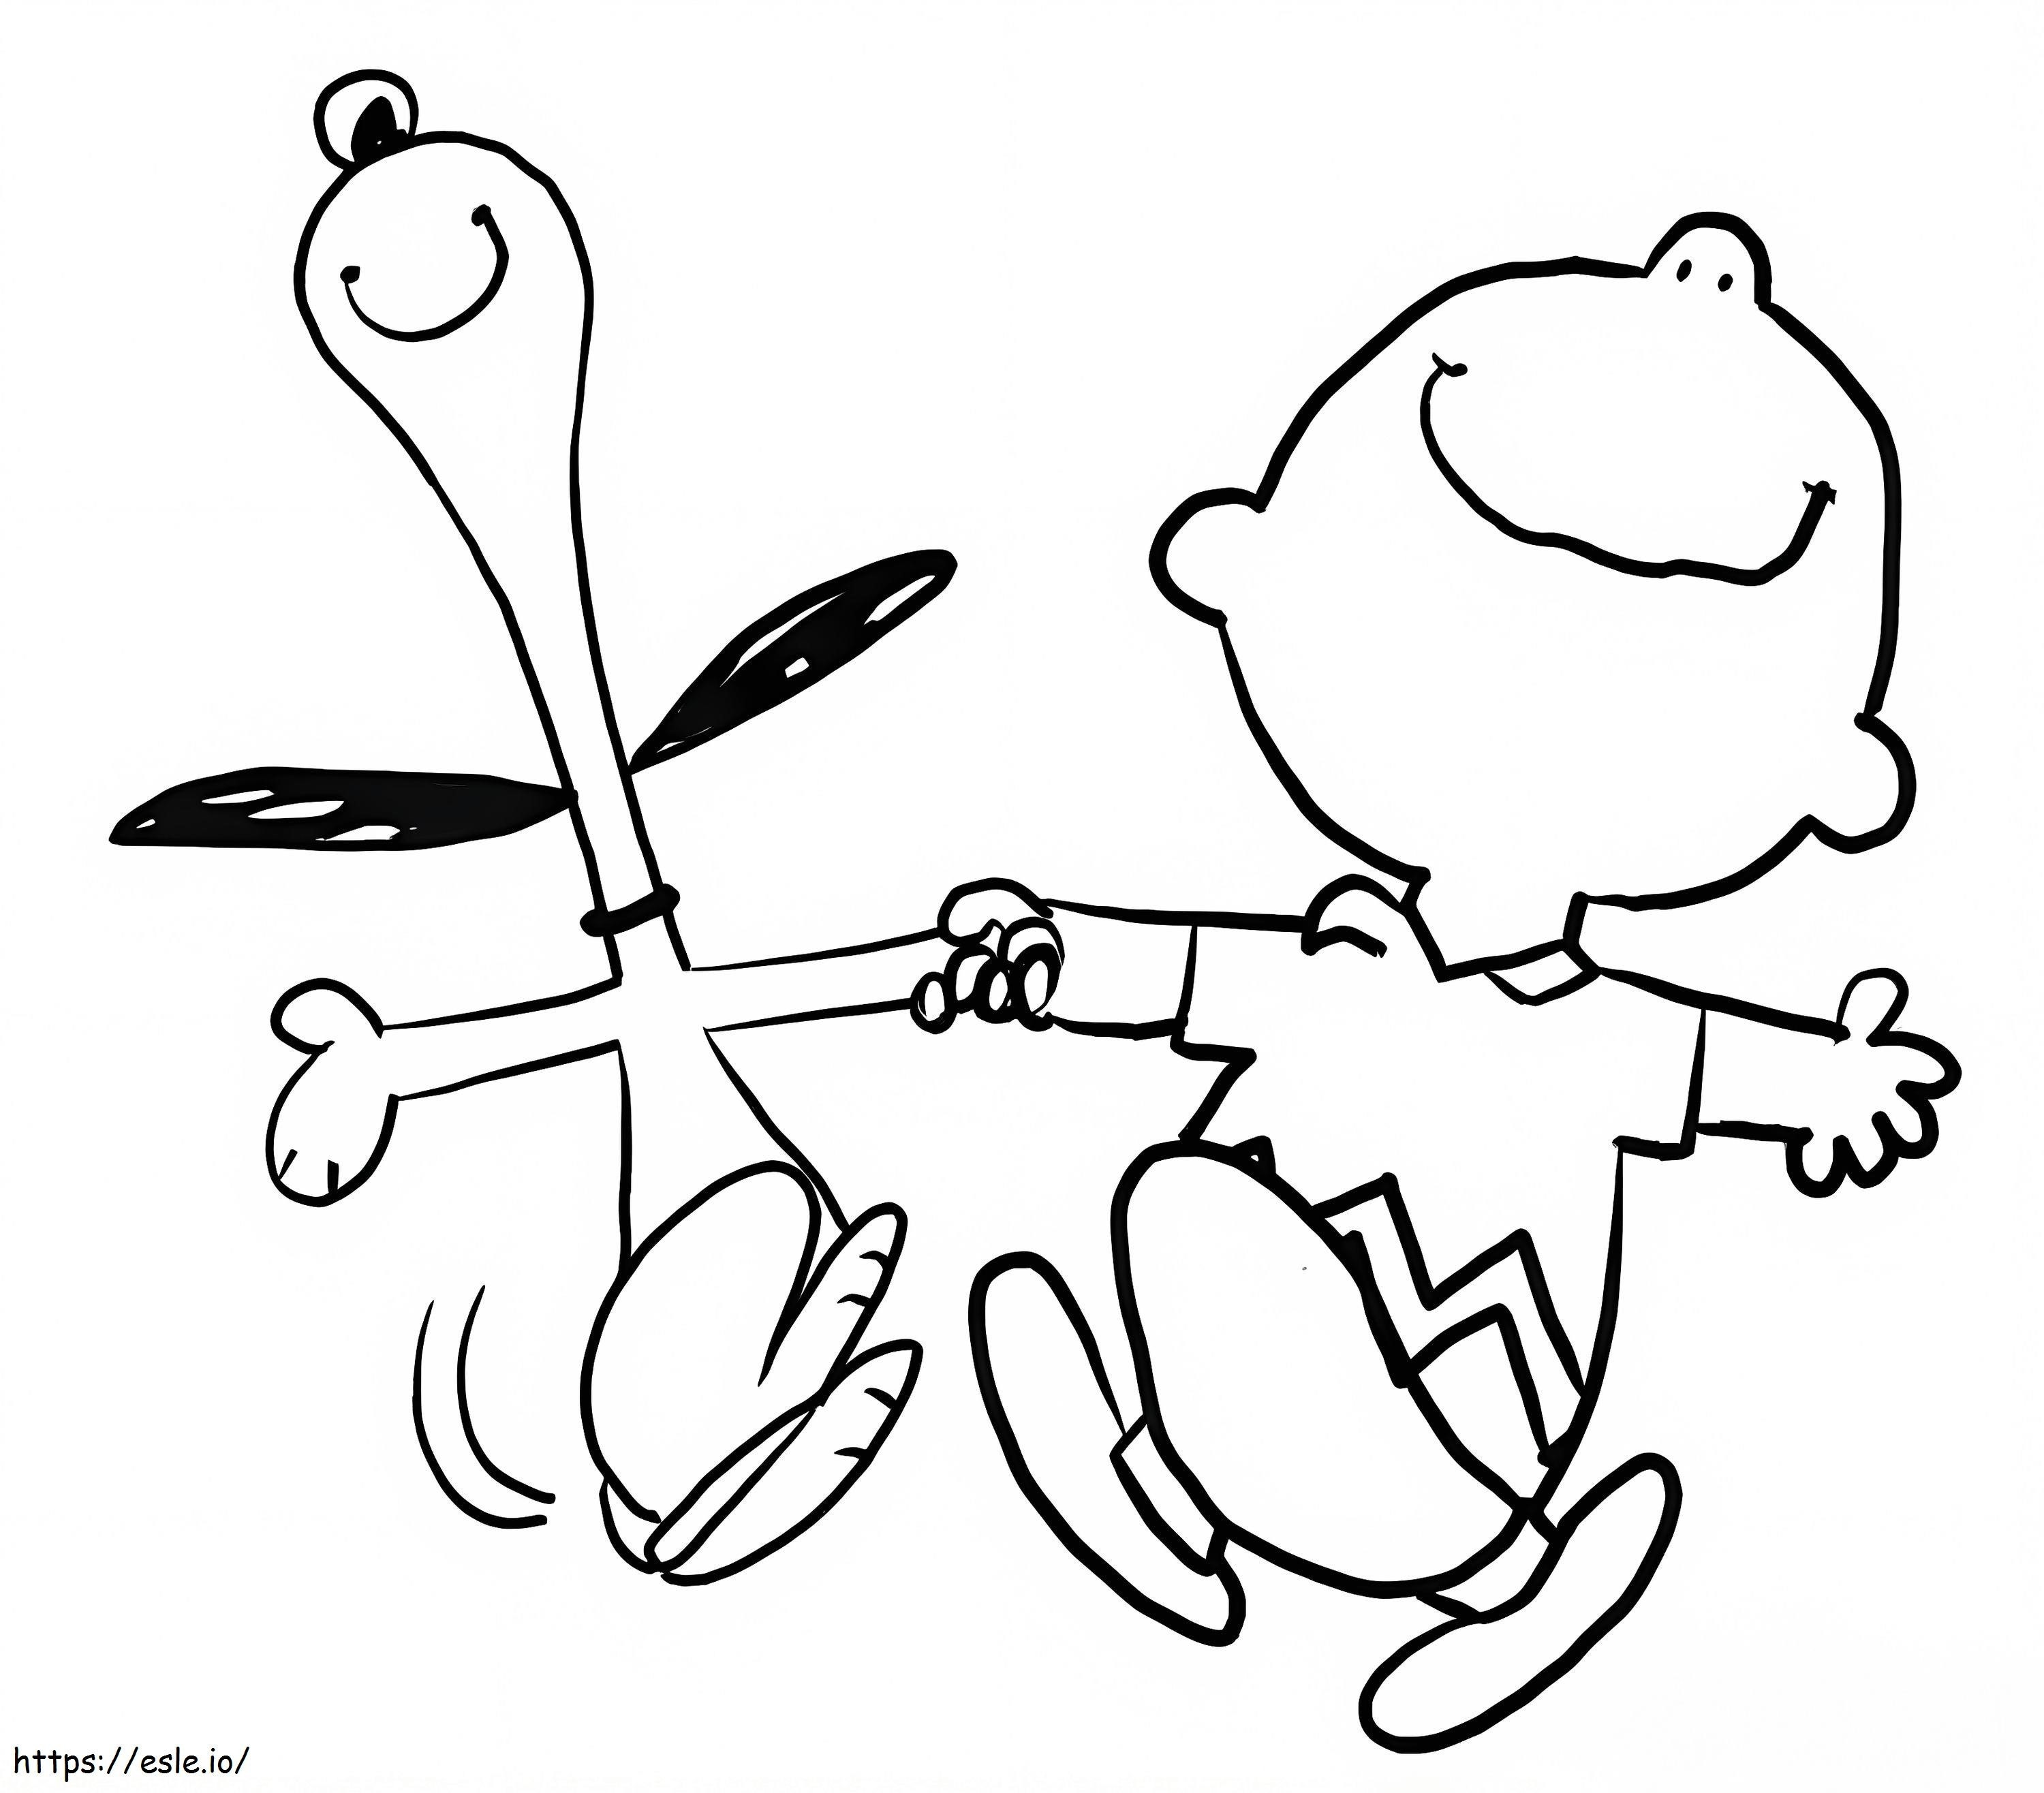 Inhalt: Snoopy und Charlie Brown ausmalbilder